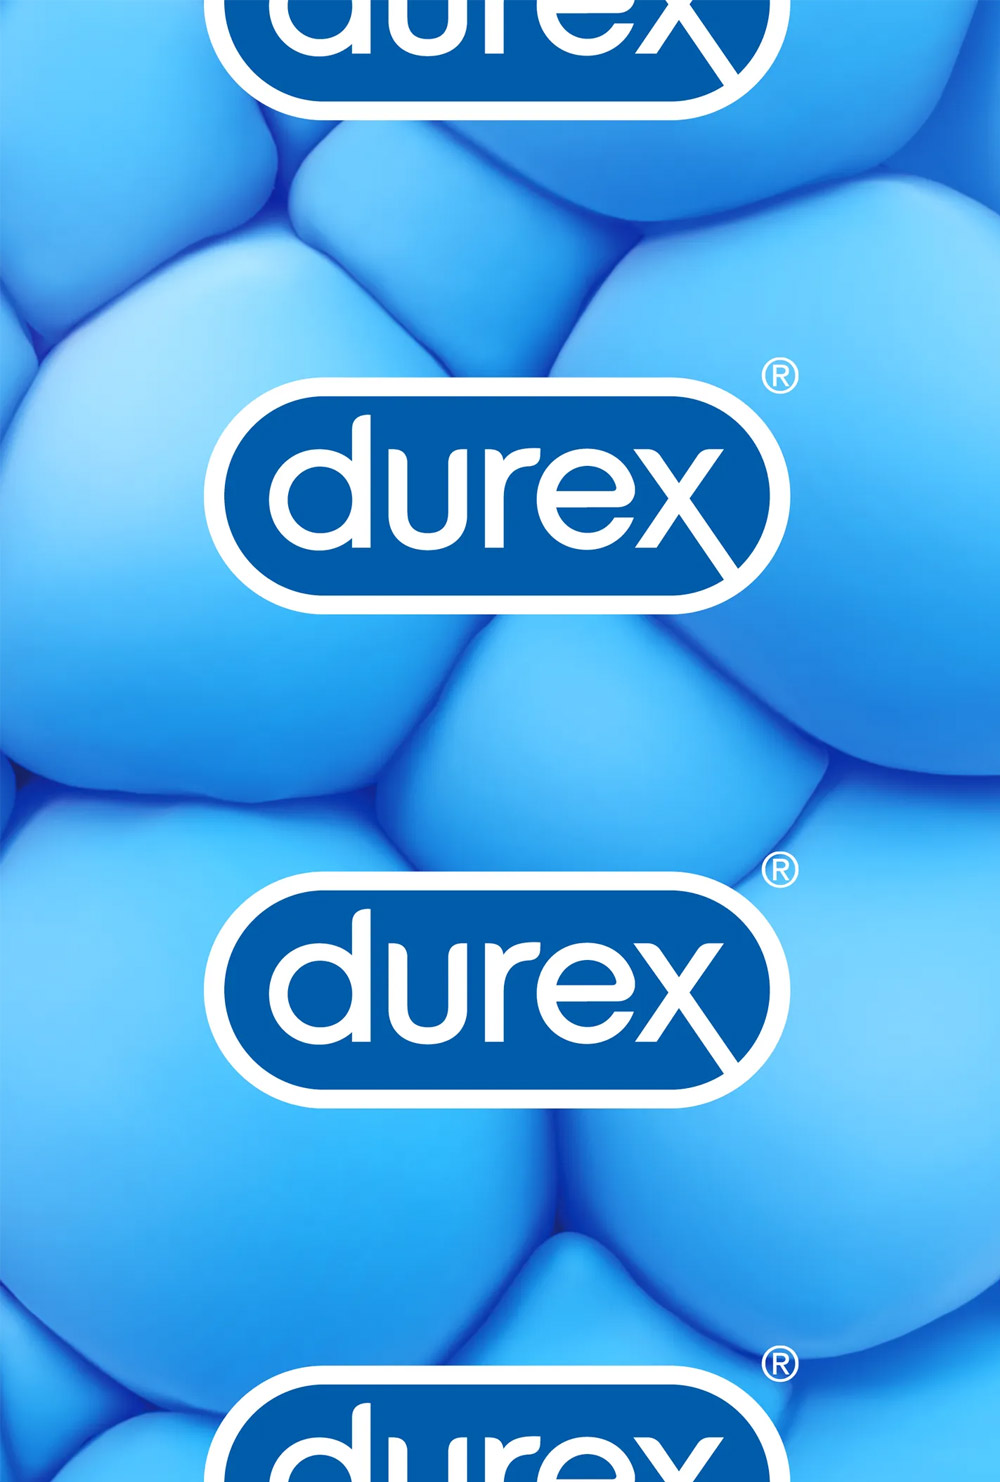 杜蕾斯更新品牌logo,启用全新的品牌形象.